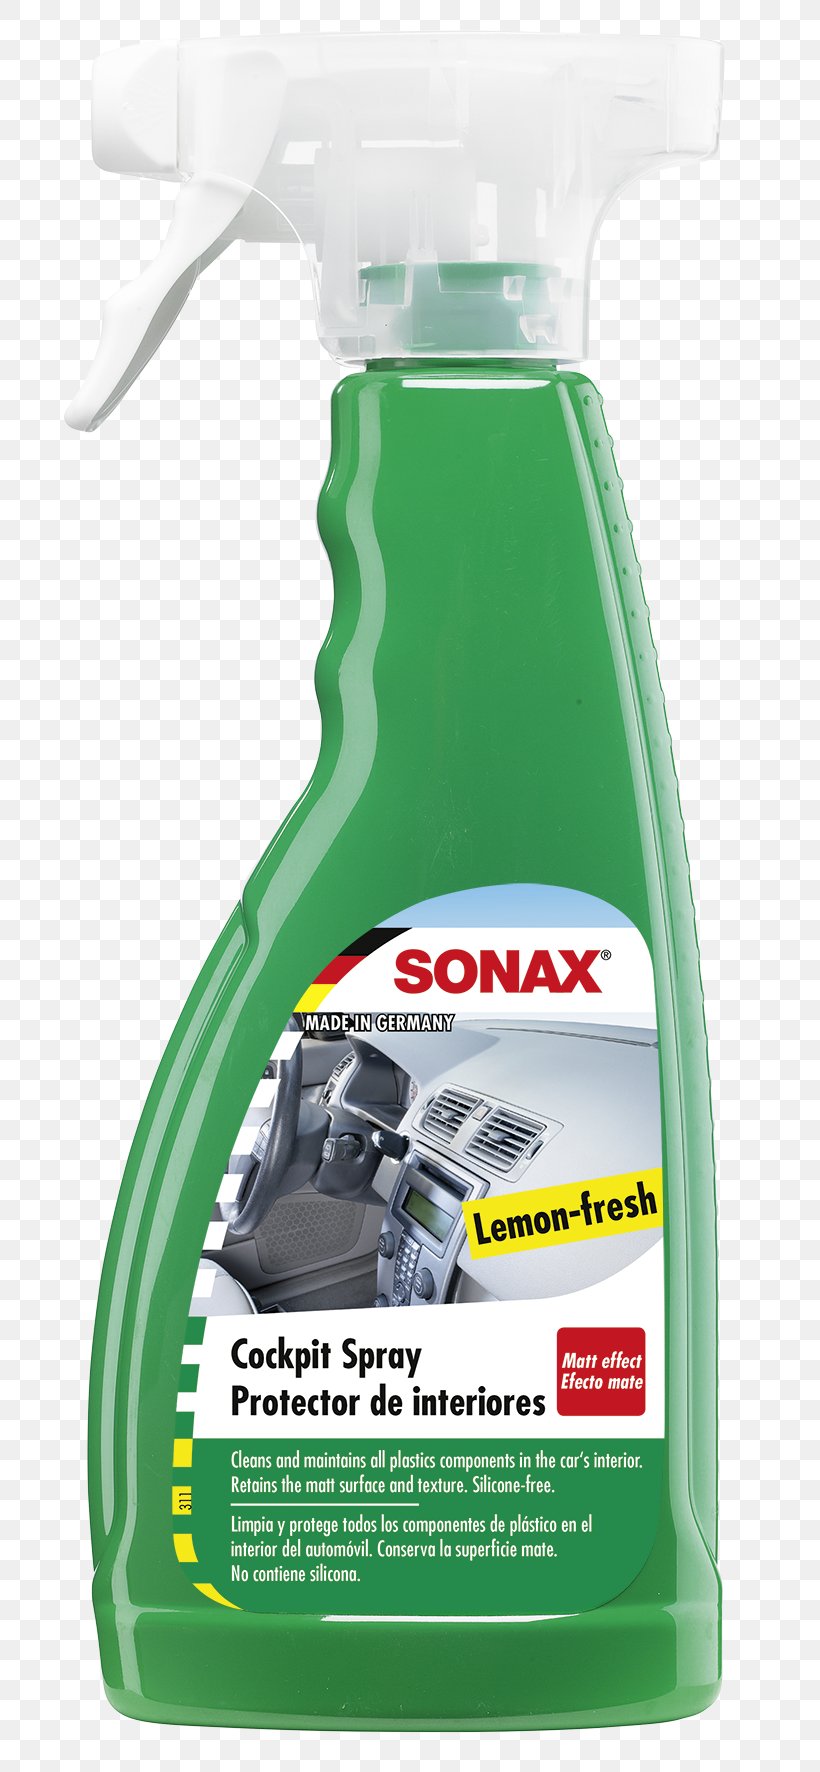 Sonax Car Cleaning Aerosol Spray, PNG, 742x1772px, Sonax, Aerosol, Aerosol Spray, Car, Car Wash Download Free